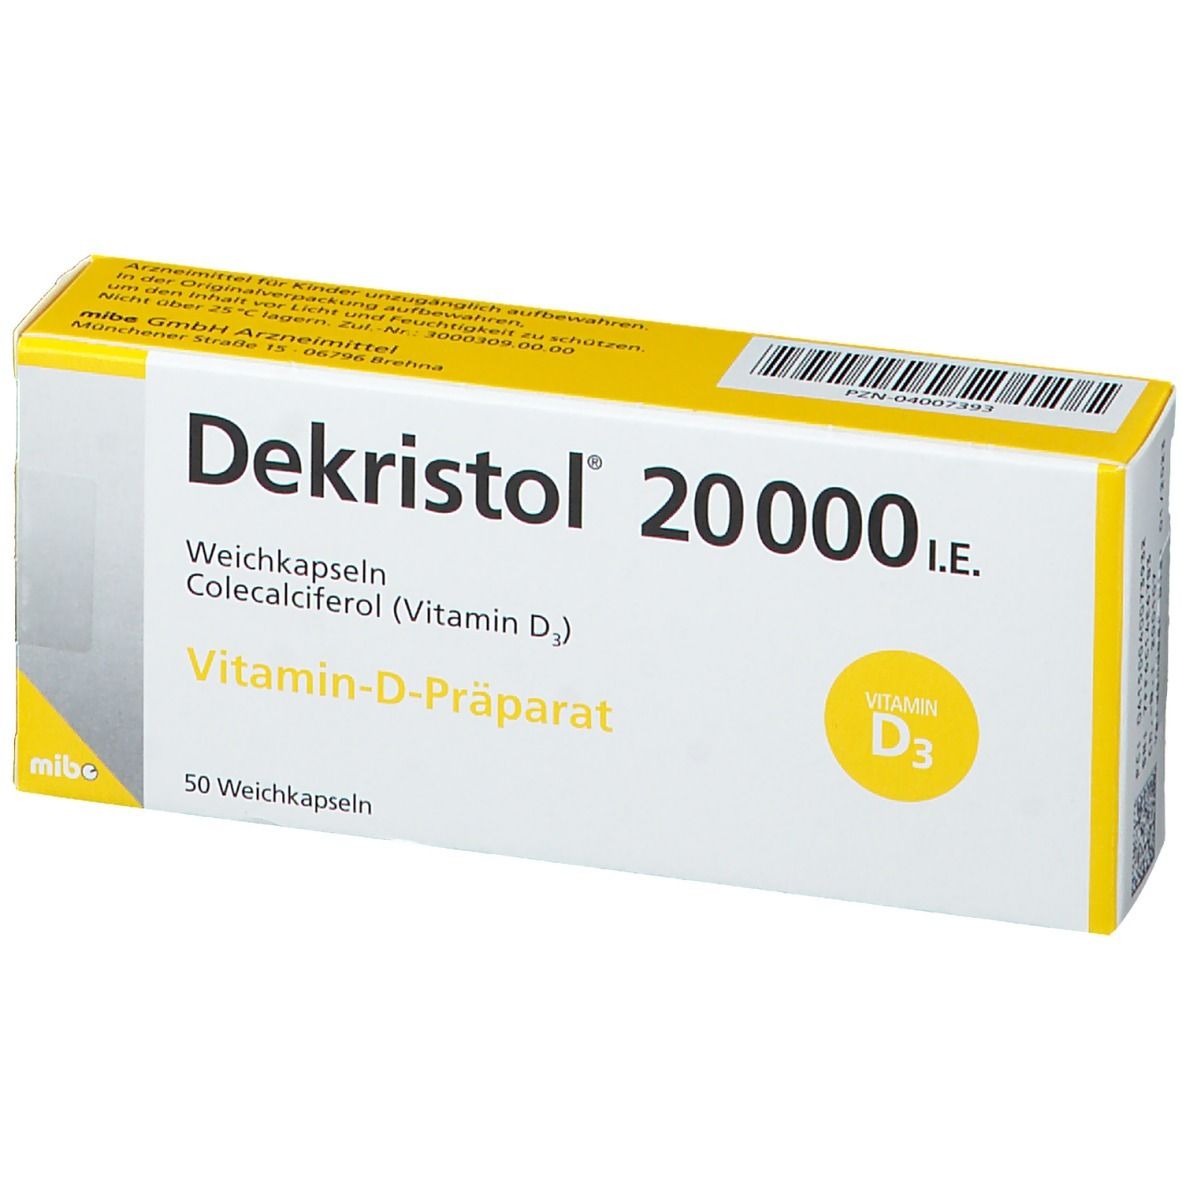 Dekristol® 20000 I.E.